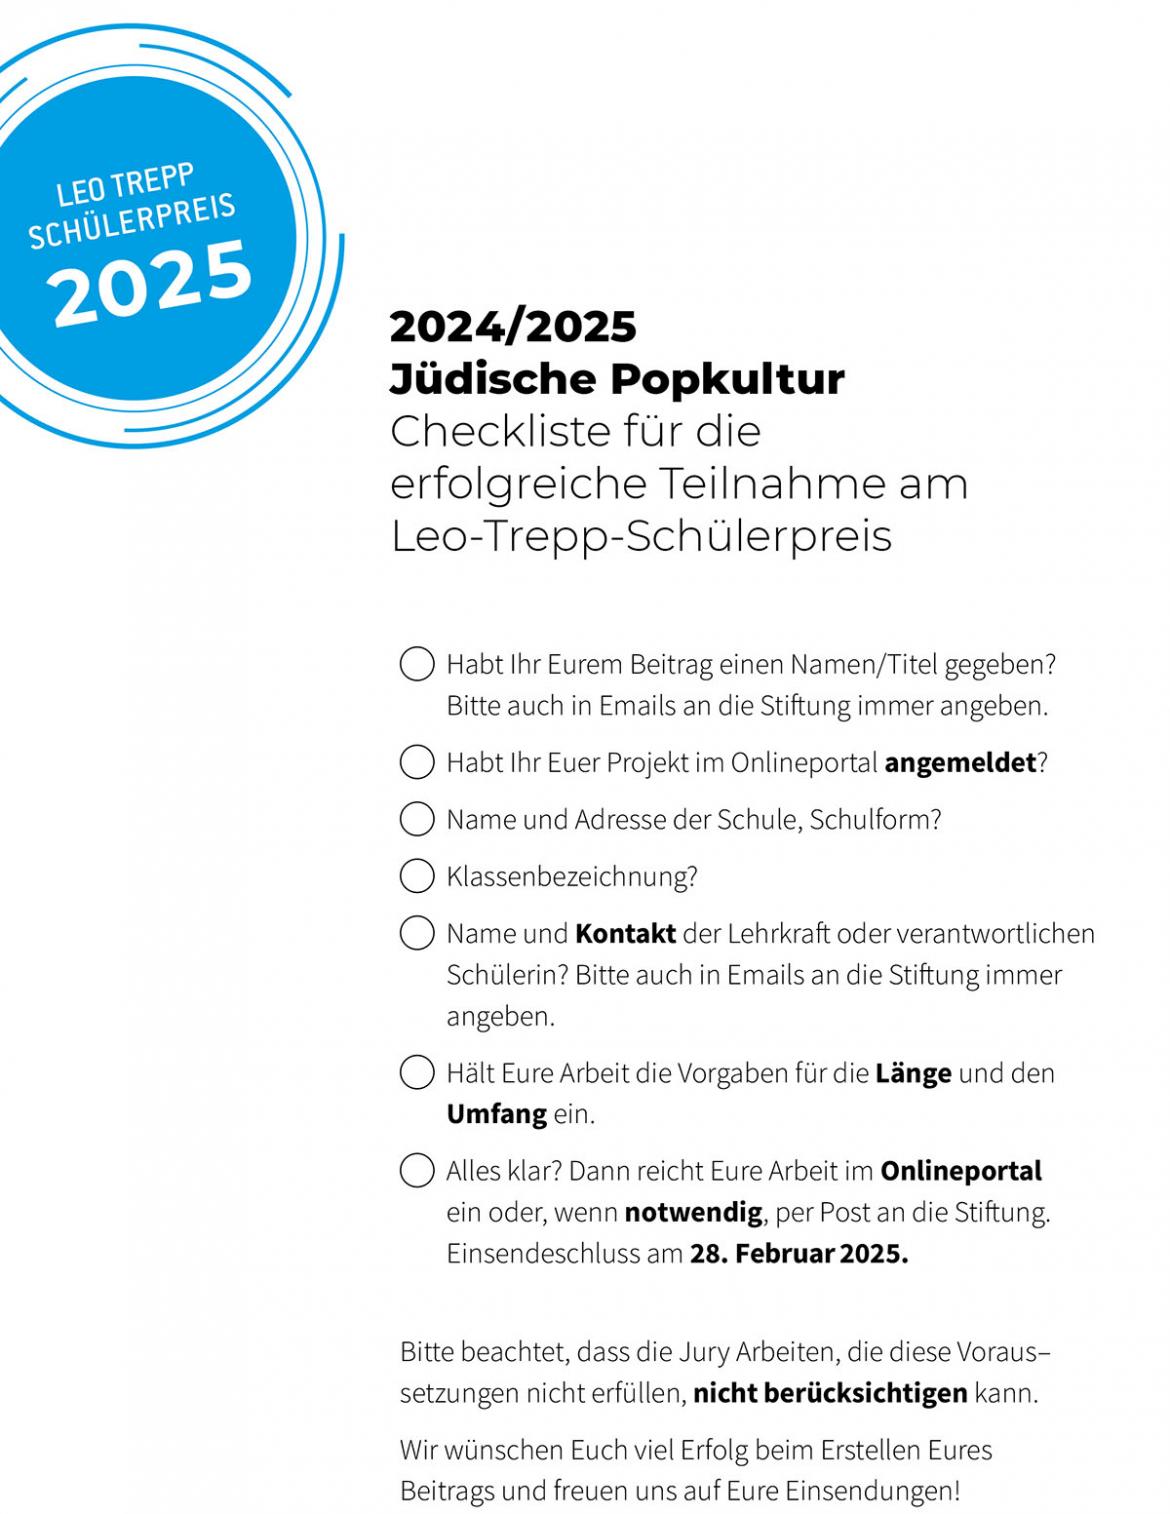 Leo Trepp-Preis 2025 Checkliste - klicken um die Datei als Pdf zu öffnen